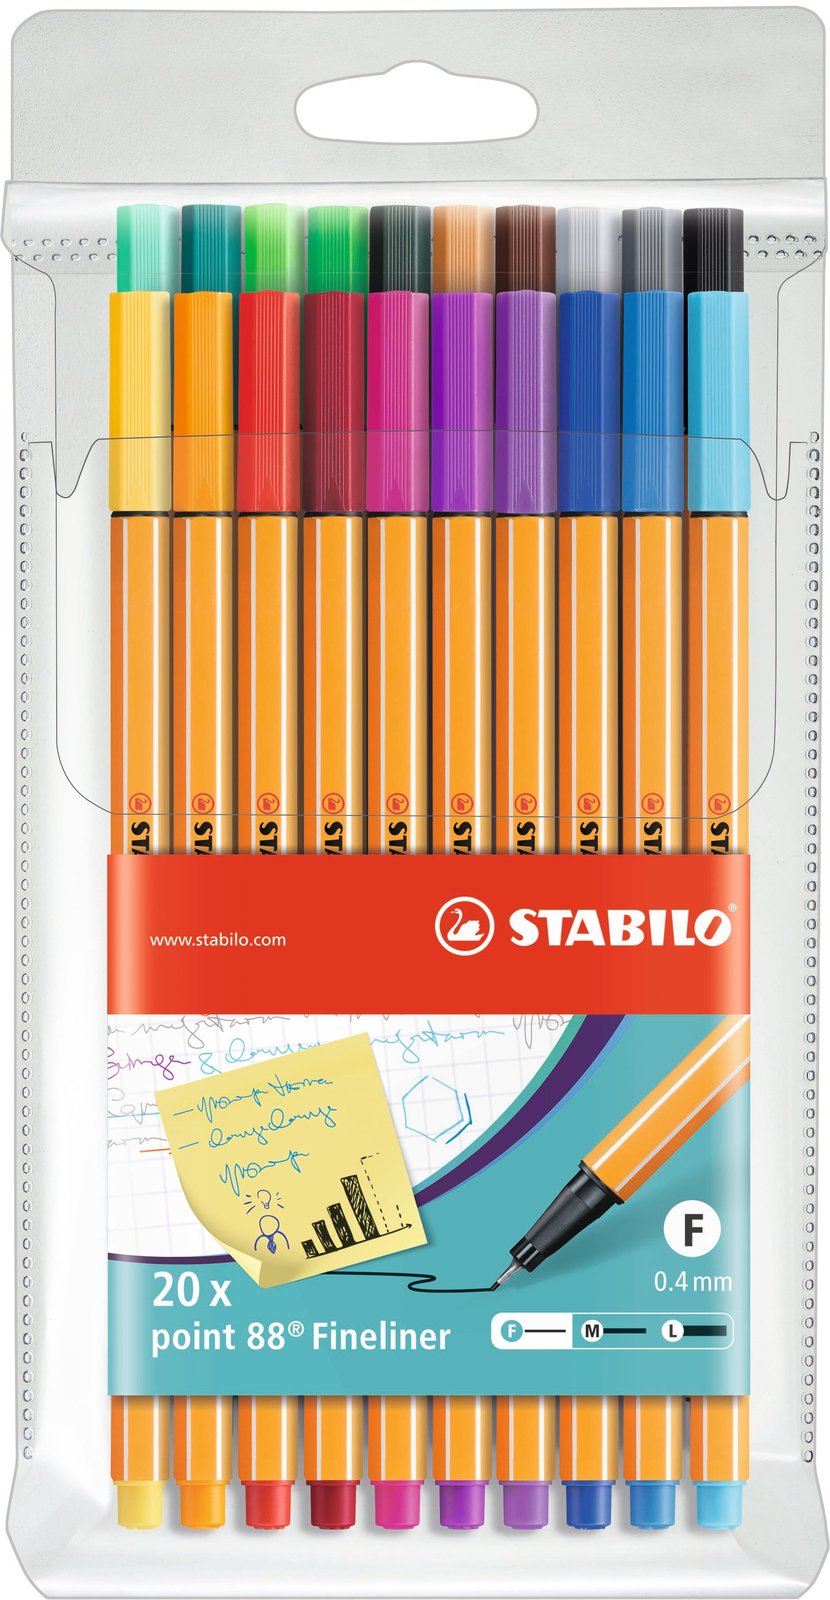 STABILO Pochette 4 stylos-feutres pointMax Edition Nature - nuances VOLCAN  - Stylo & feutre - LDLC